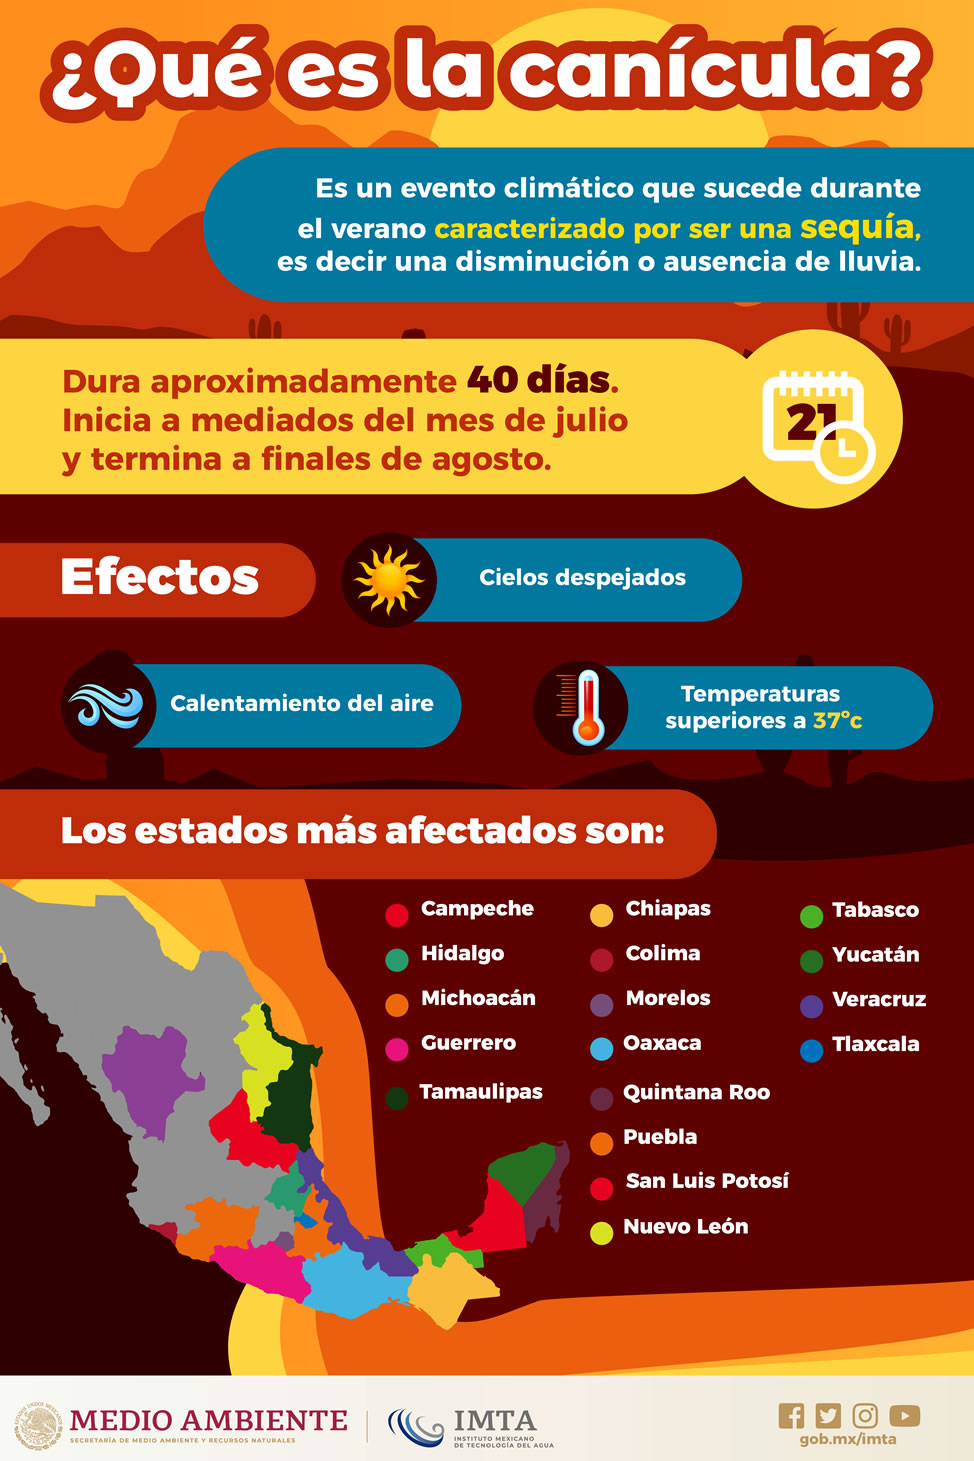 Canícula ve qué es y por qué alertan a estos estados Conexion Sinaloa